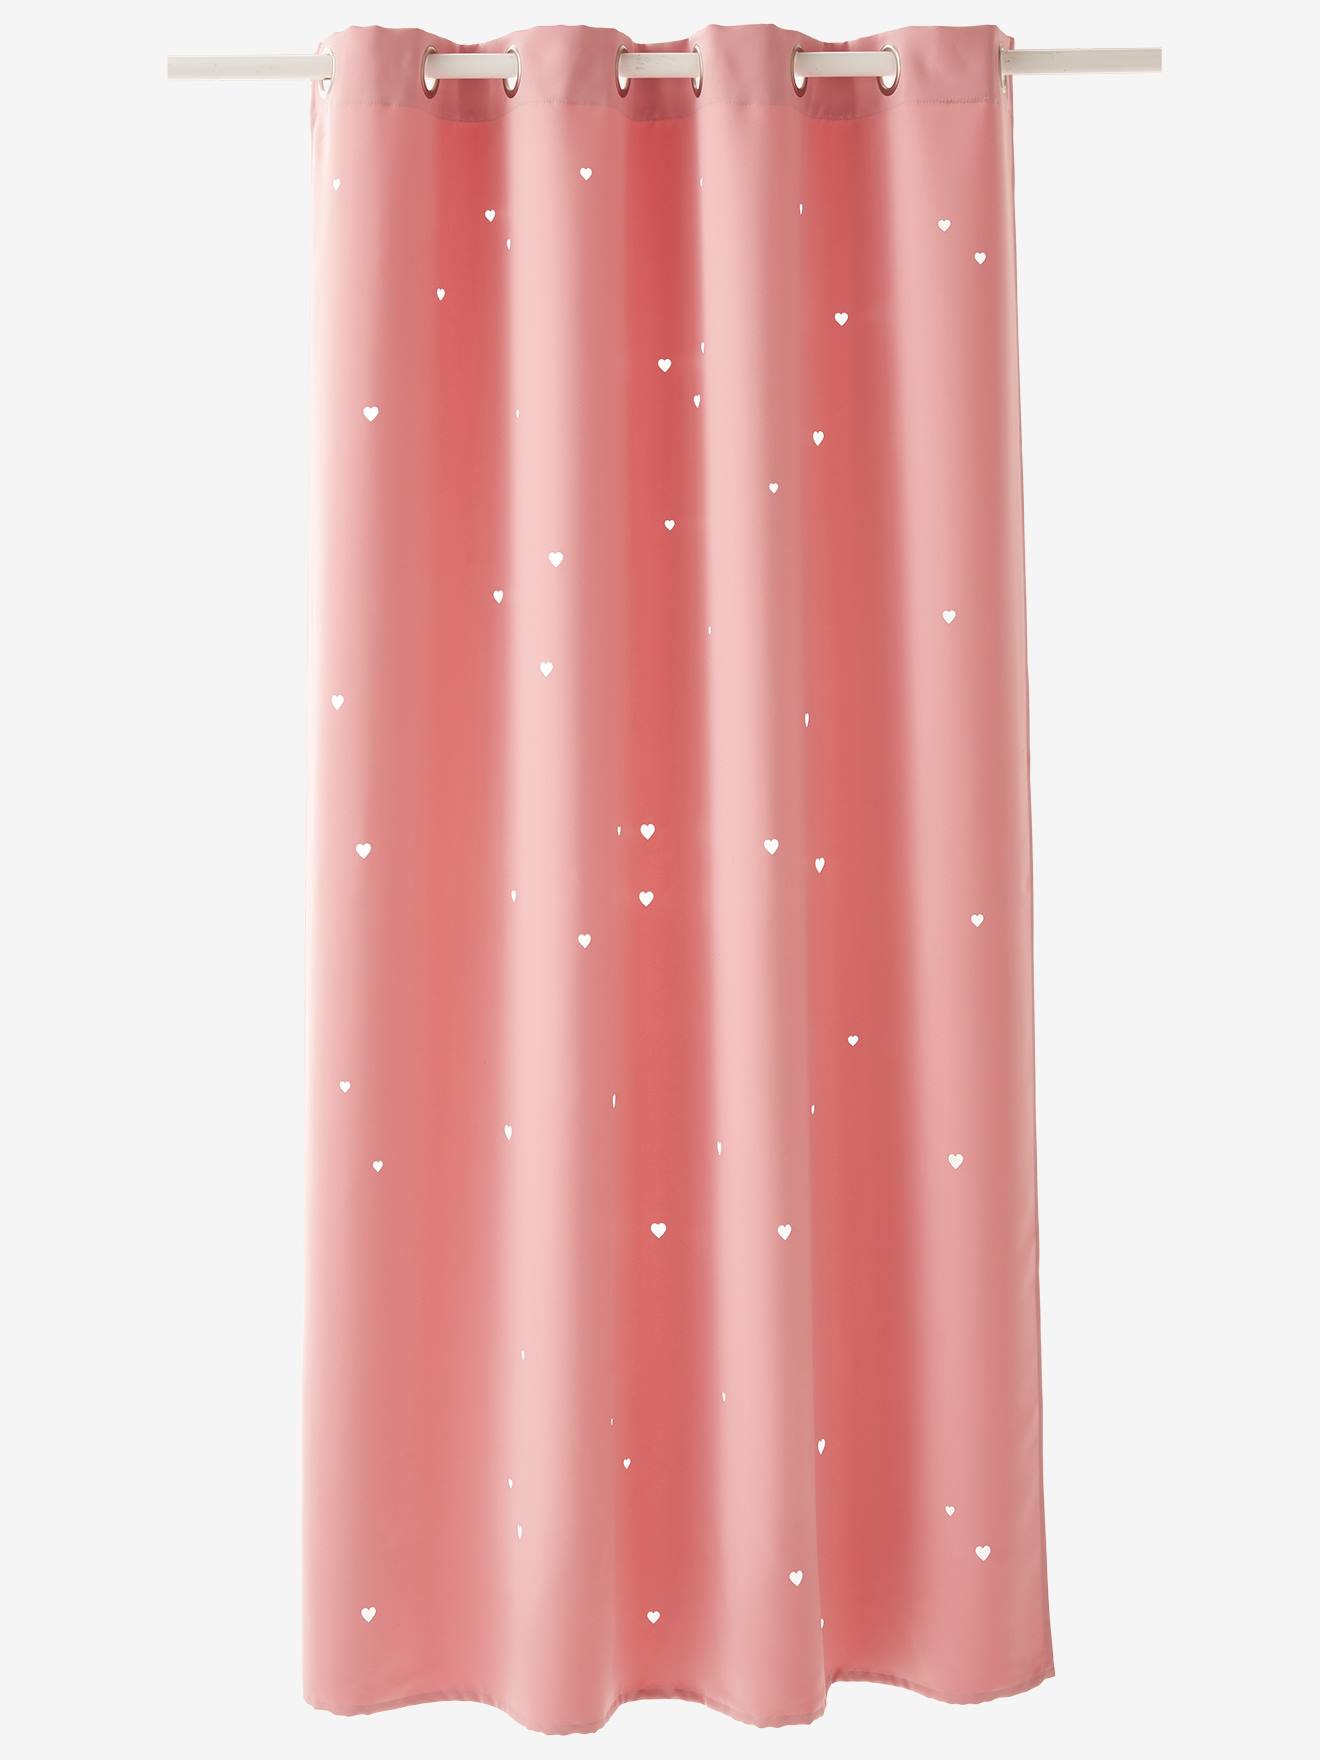 Verdunkelungsvorhang mit ausgestanzten Sternen Dekoration Bettwäsche - rosa/herzen, 